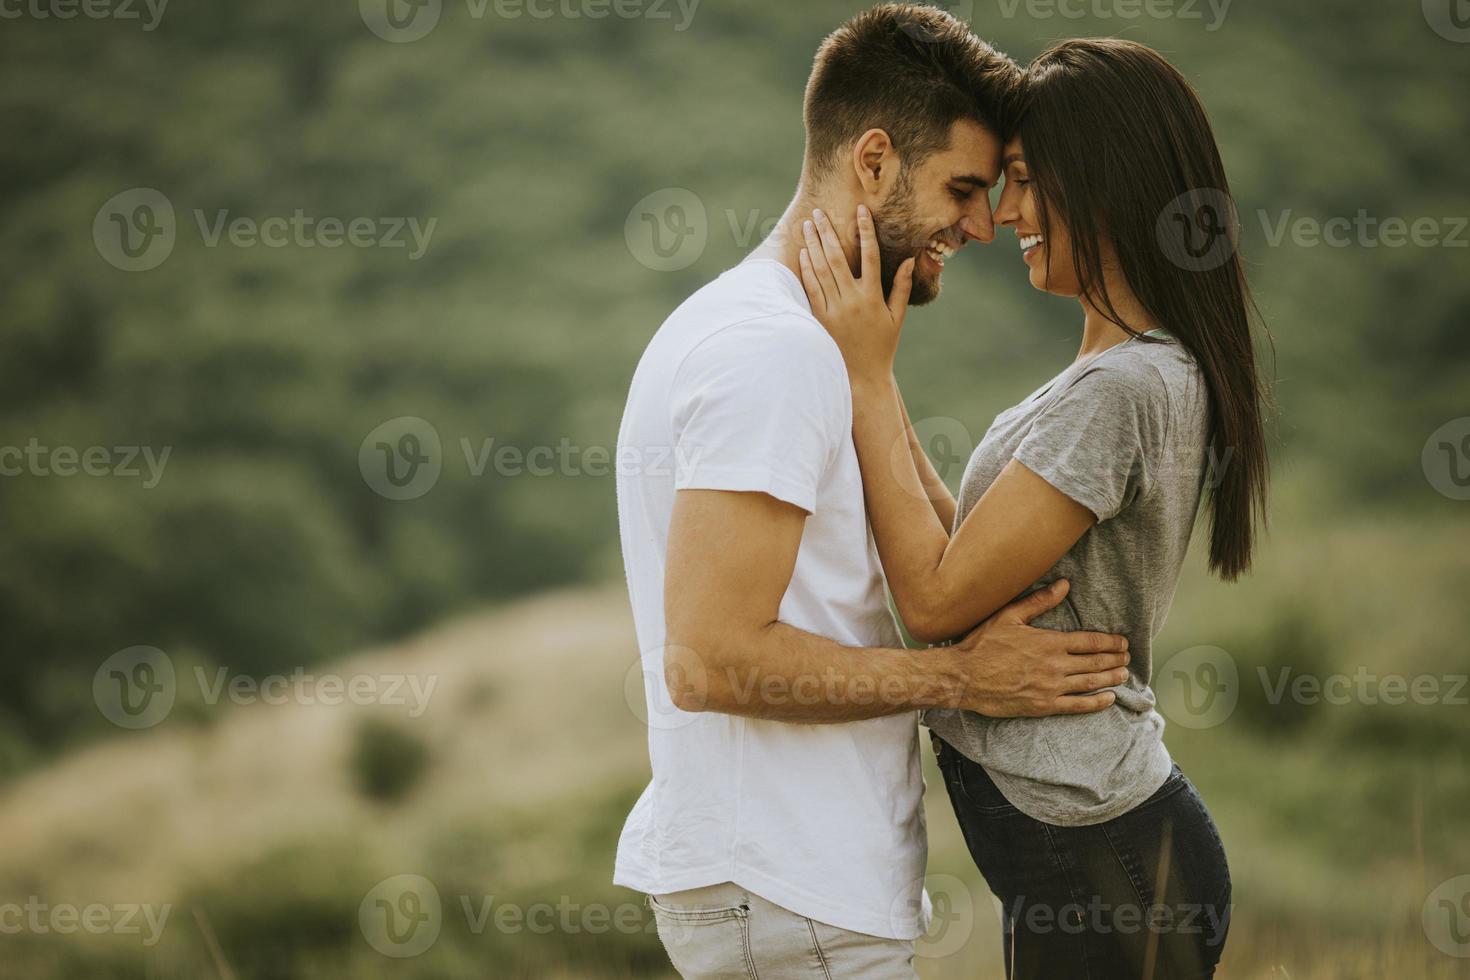 lyckliga unga par i kärlek på gräsplanen foto